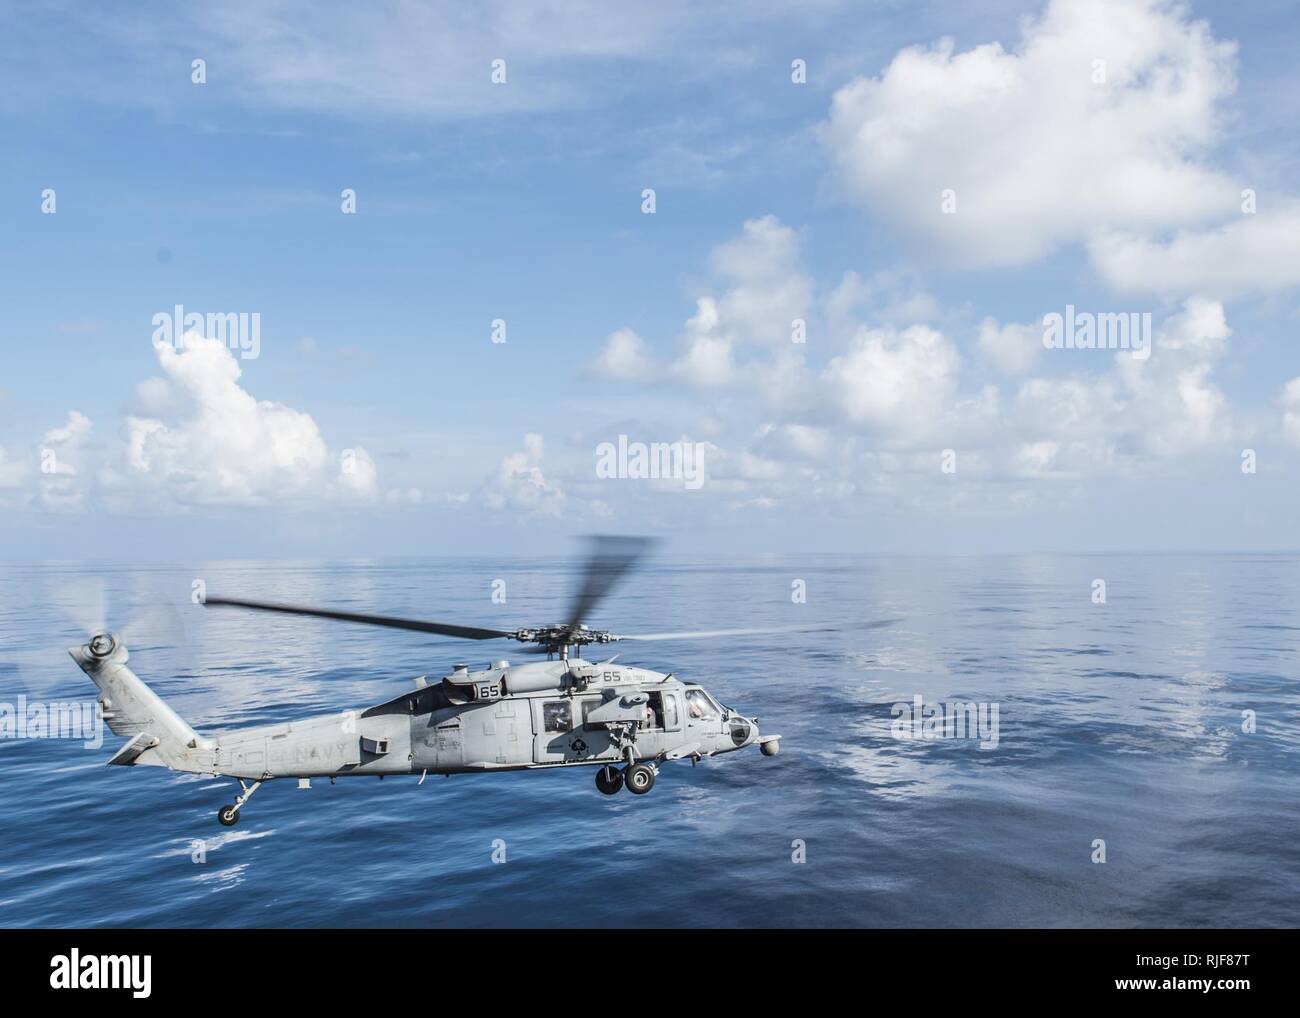 Océano Índico (Oct. 31, 2015) un MH-60S Sea Hawk helicóptero, desde el "Blackjacks" escuadrón de helicópteros de combate de mar (HSC) 21, se aparta la cubierta de vuelo de avispa clase de buque de asalto anfibio USS Essex (LHD 2). Essex es el buque insignia de la Essex Amphibious Ready Group (ARG) y, con la 15ª Unidad Expedicionaria de los Infantes de Marina embarcados (15th MEU), está desplegado en apoyo de operaciones de seguridad marítima y los esfuerzos de cooperación de seguridad de teatro en los EE.UU. 5ª zona de operaciones de la flota. Foto de stock